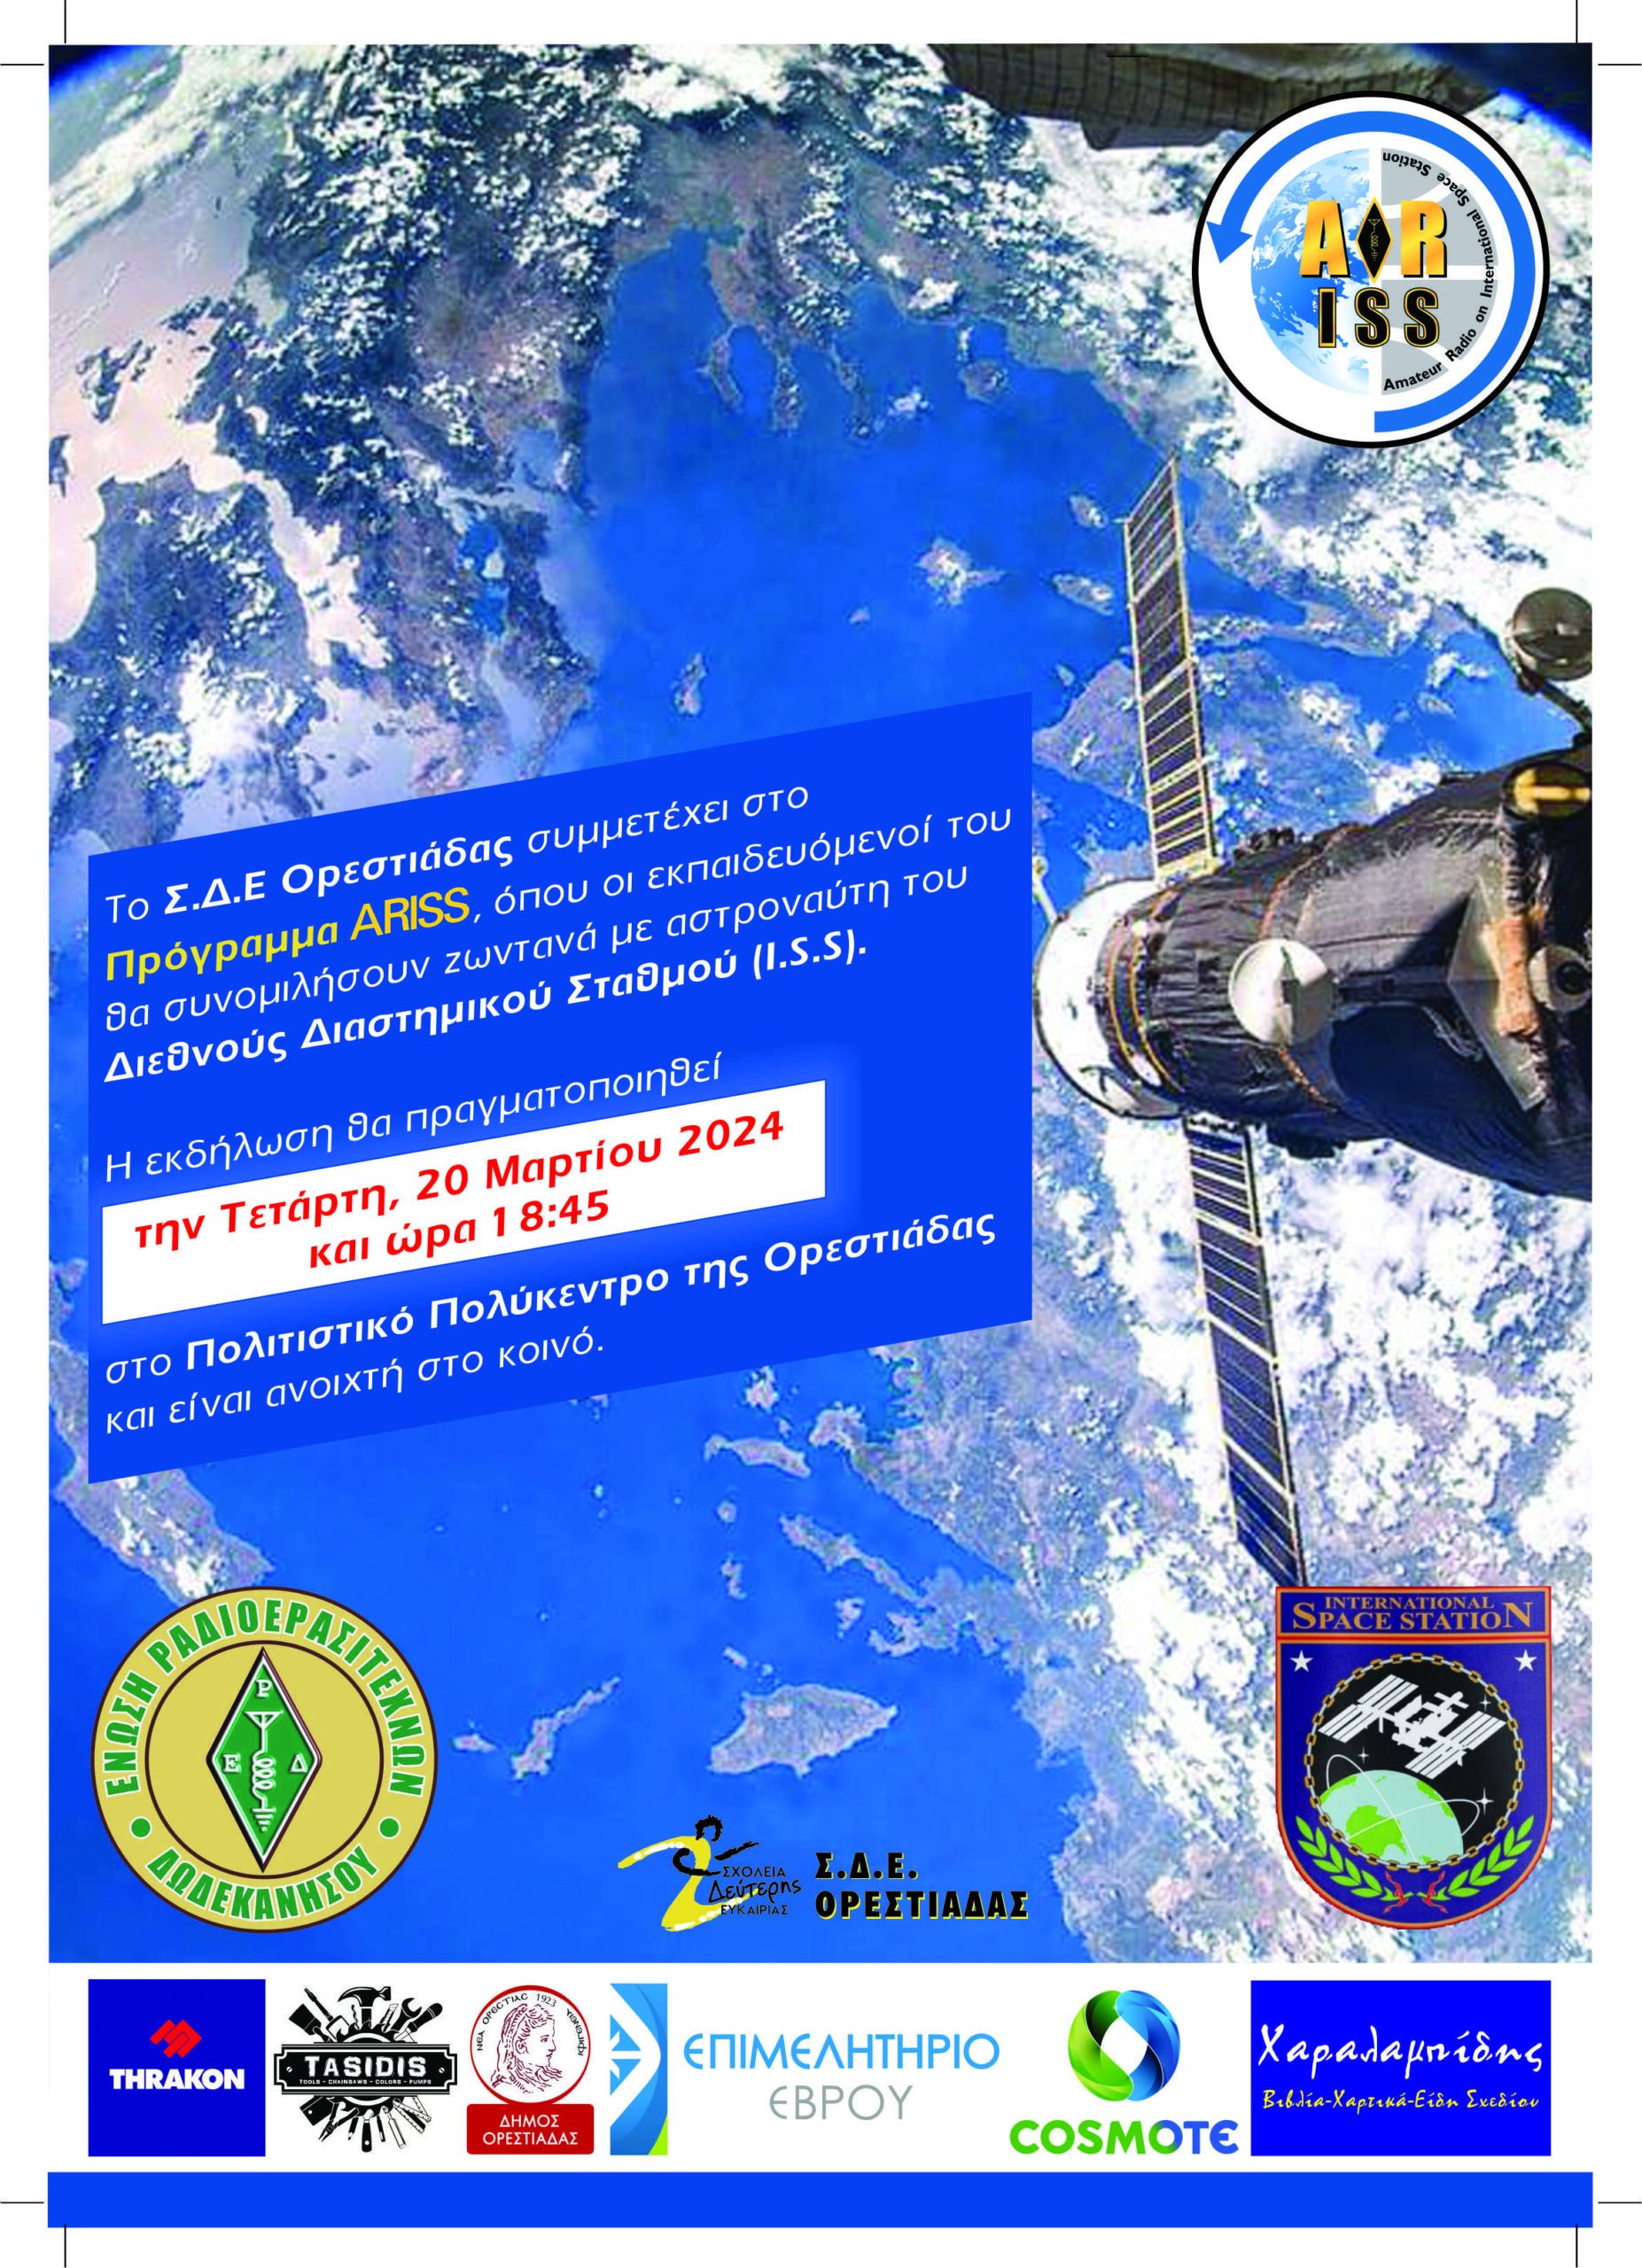 Ορεστιάδα: “Living beyond earth” – Πρόγραμμα ARISS-Σύνδεση του Σ.Δ.Ε. με το  Διεθνή Διαστημικό Σταθμό (ISS)!